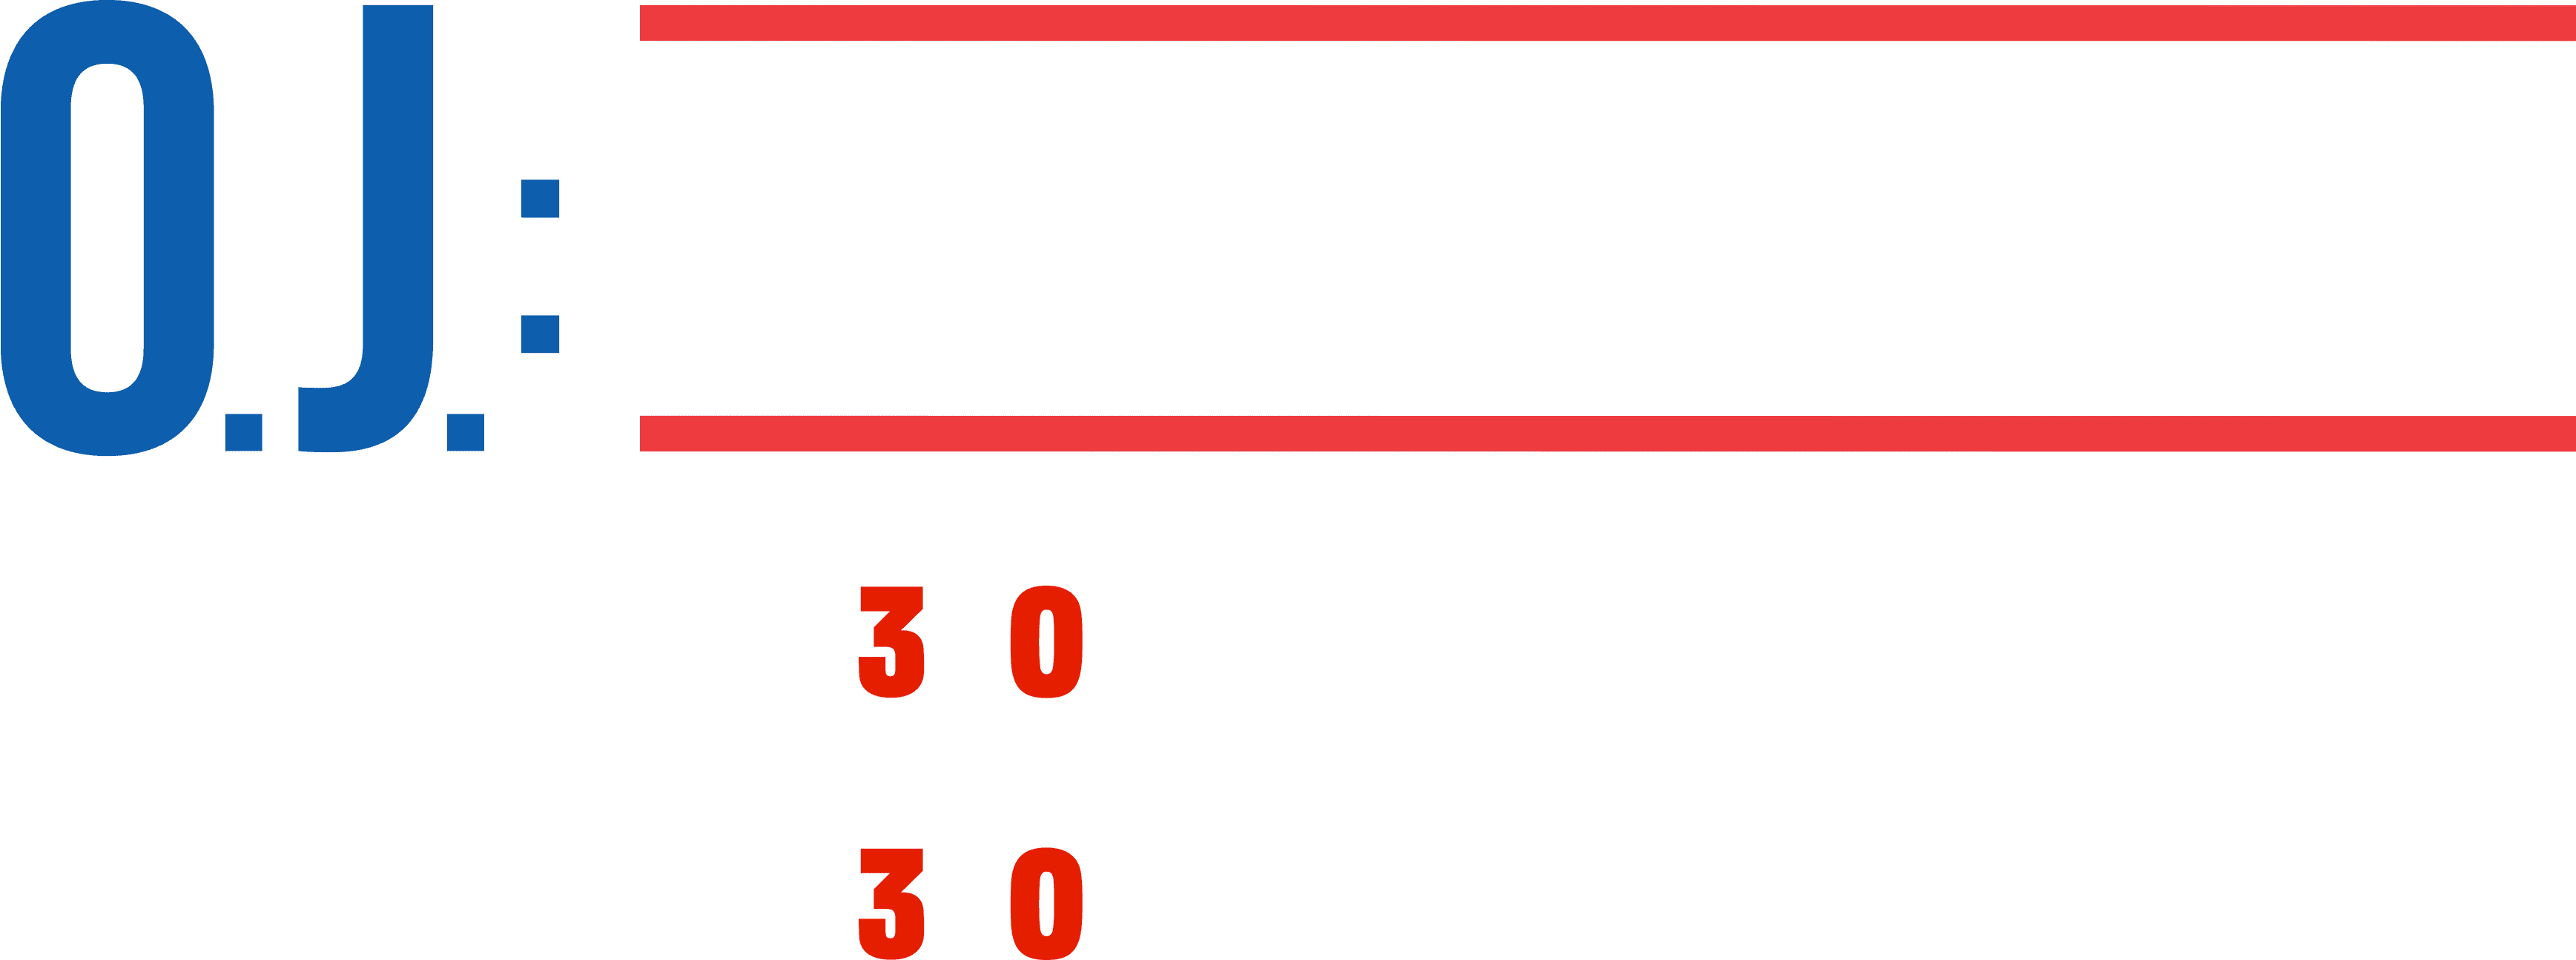 O.J.: Made in America logo